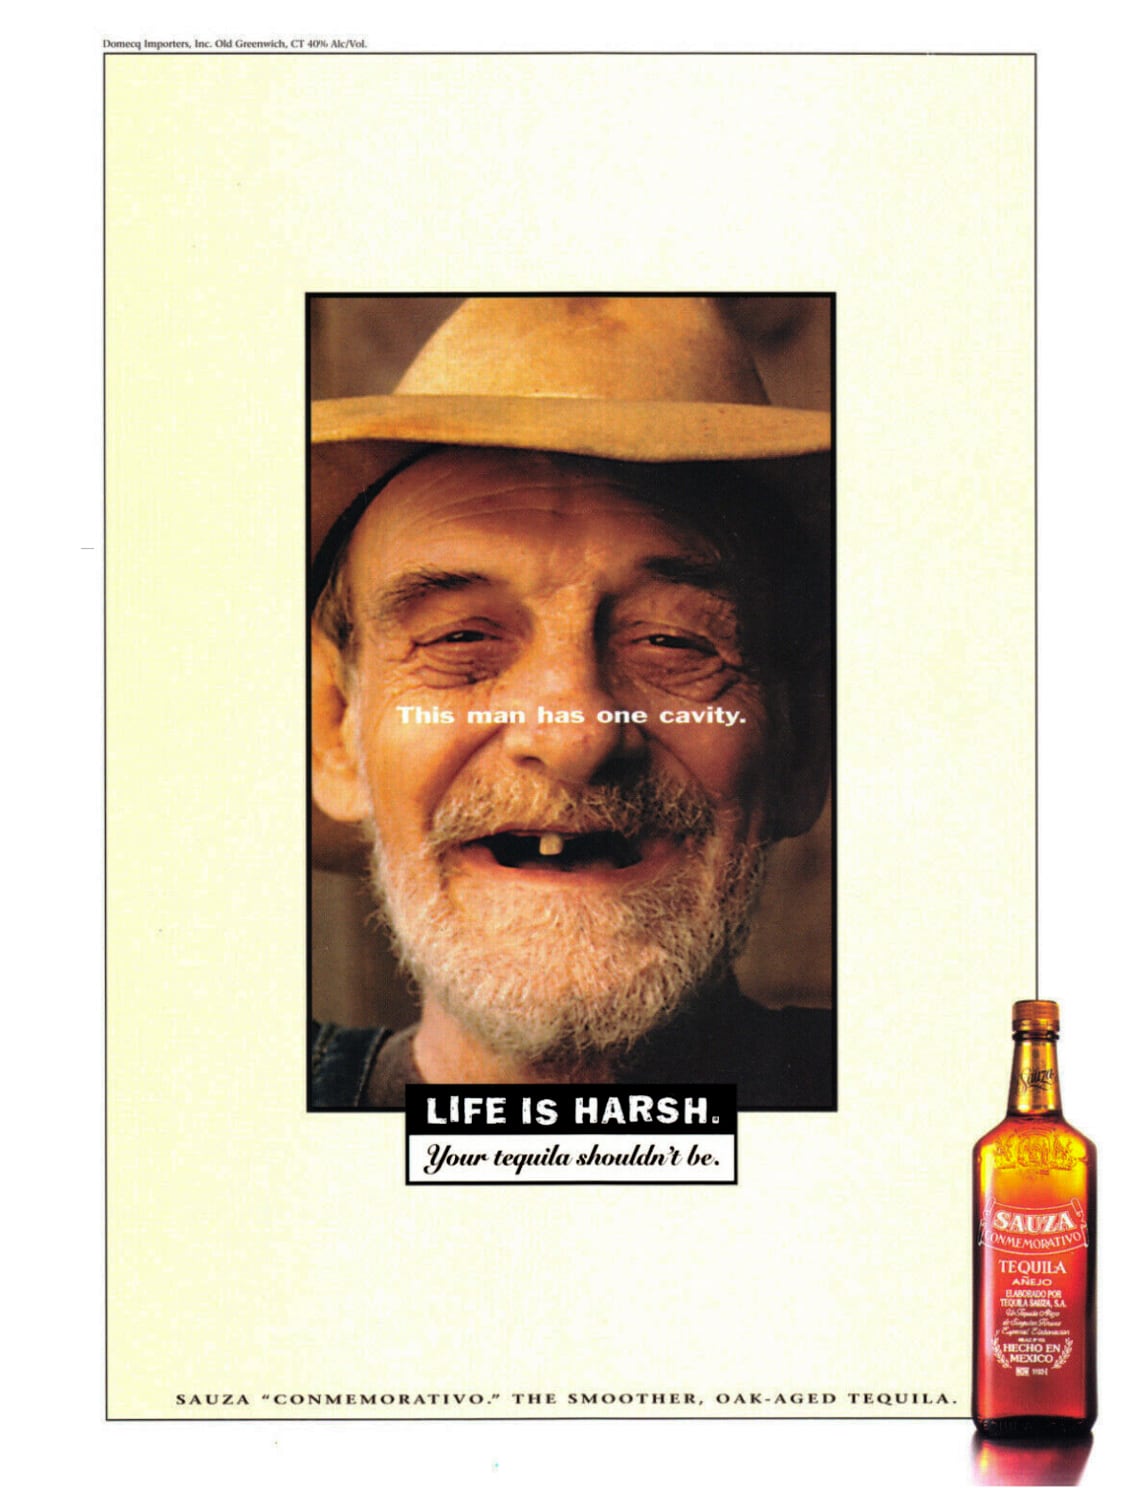 1997 Print Ad for Sauza Conmemarativo.